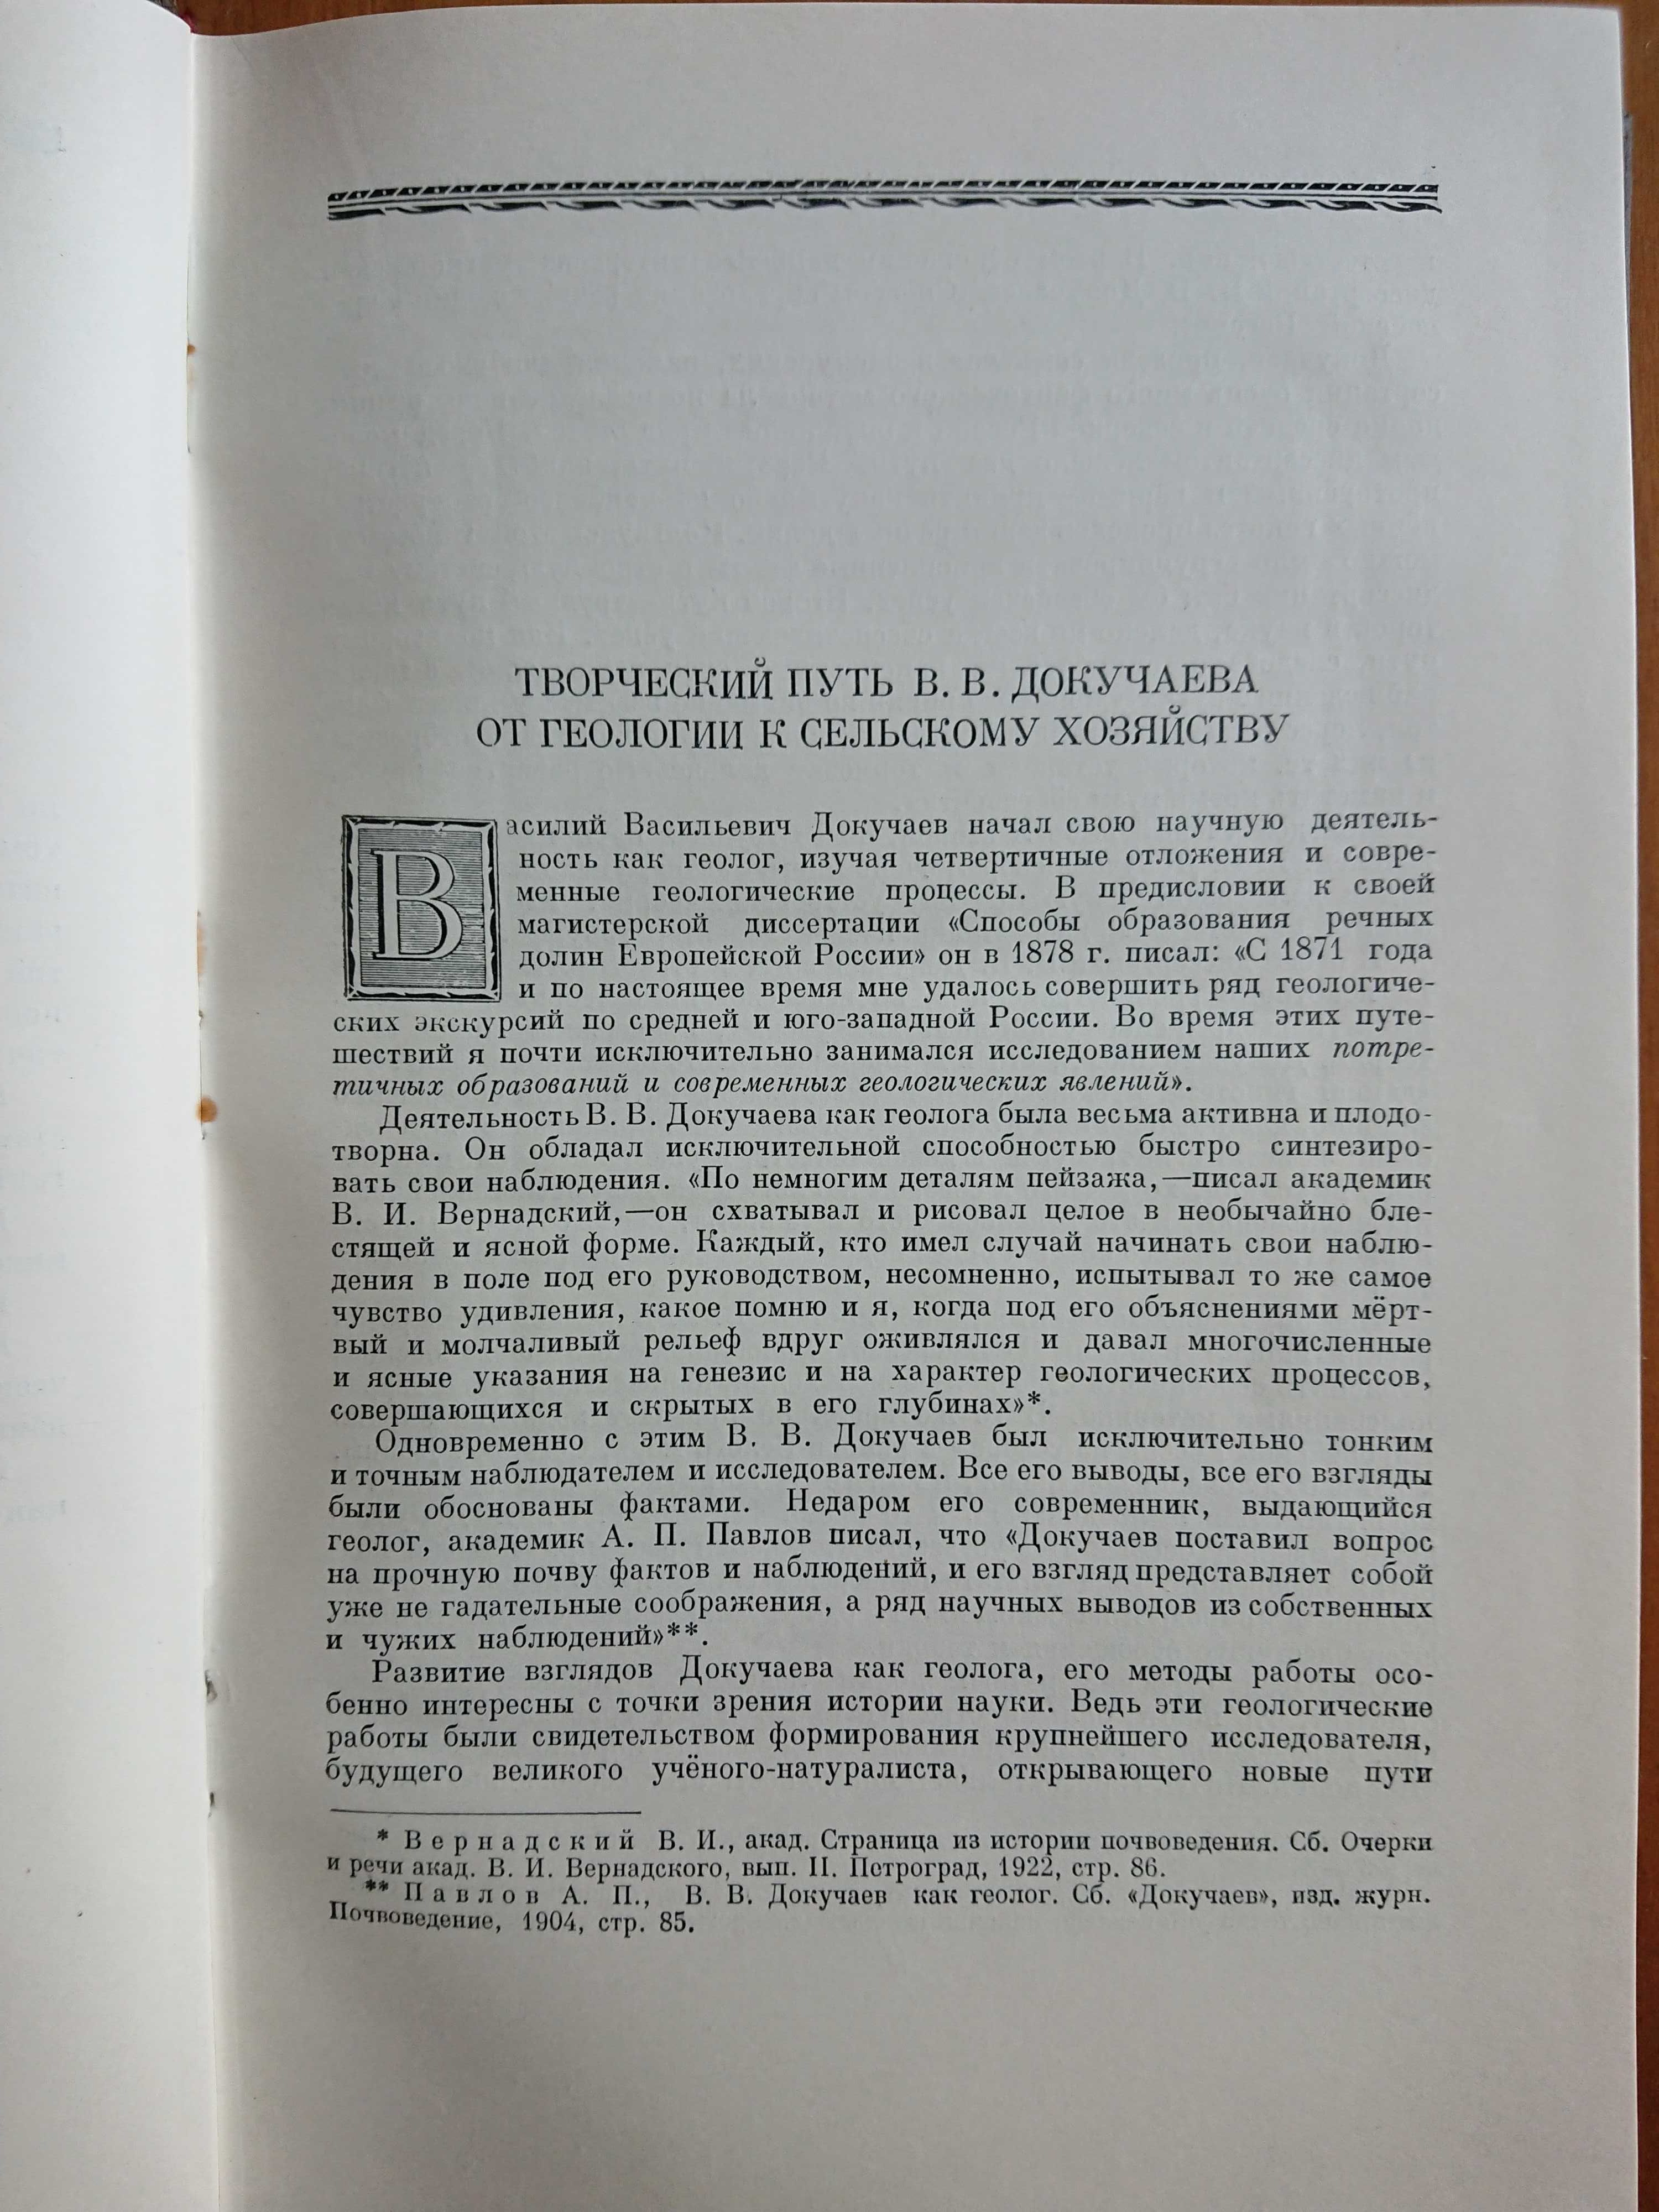 Докучаев В.В. Избранные сочинения. Том II, 1949.